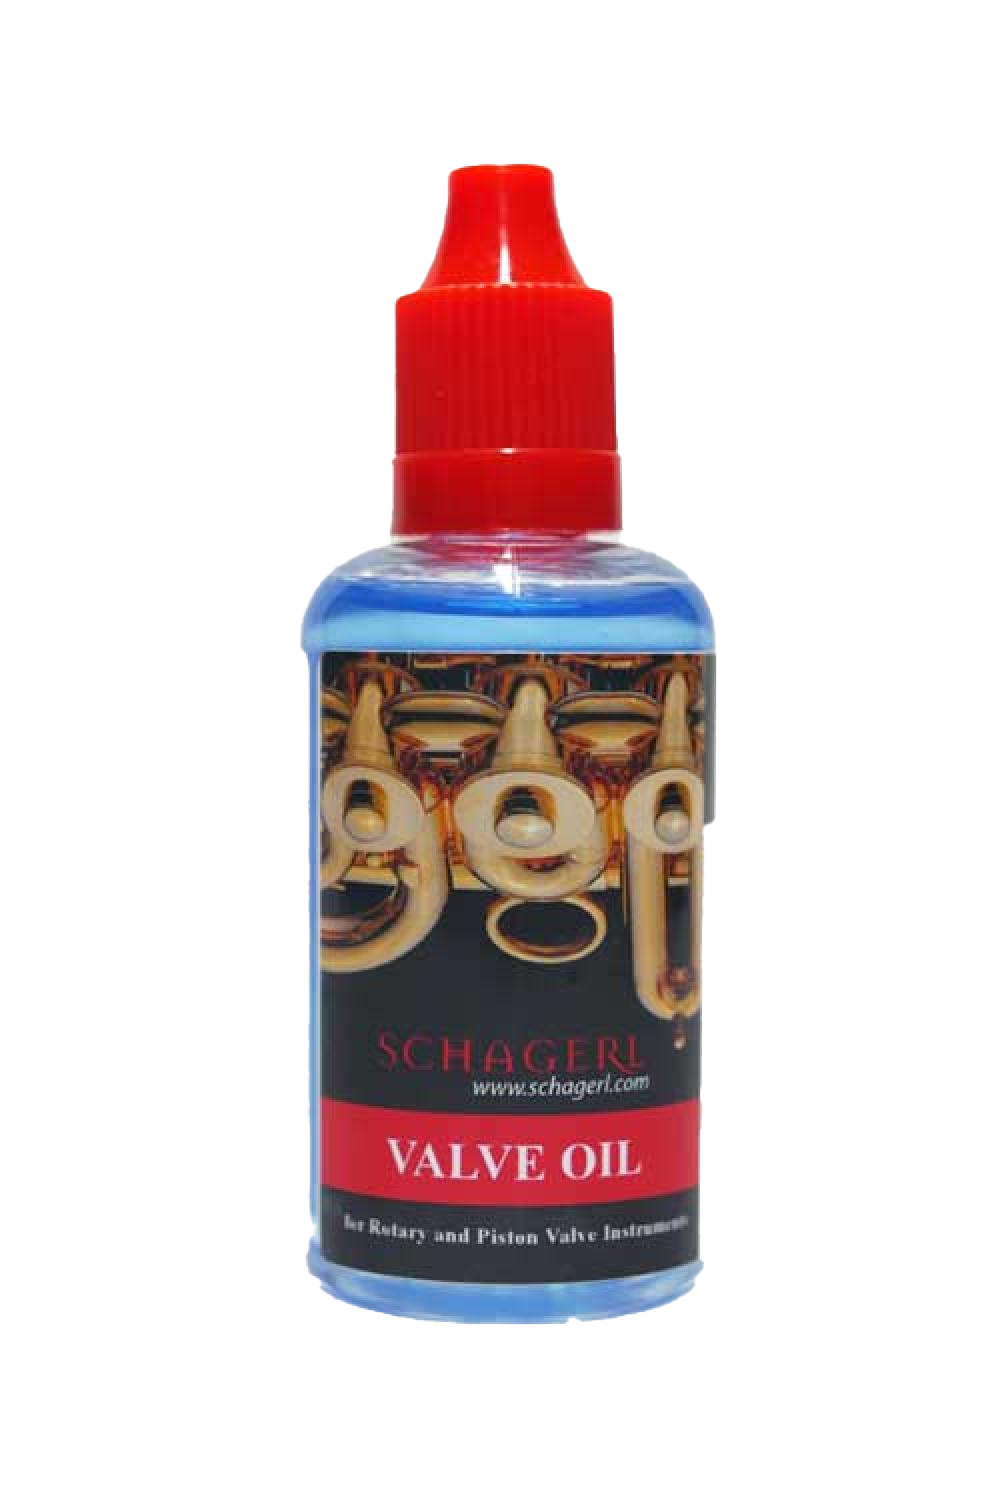 Schagerl Valve Oil 50 ml